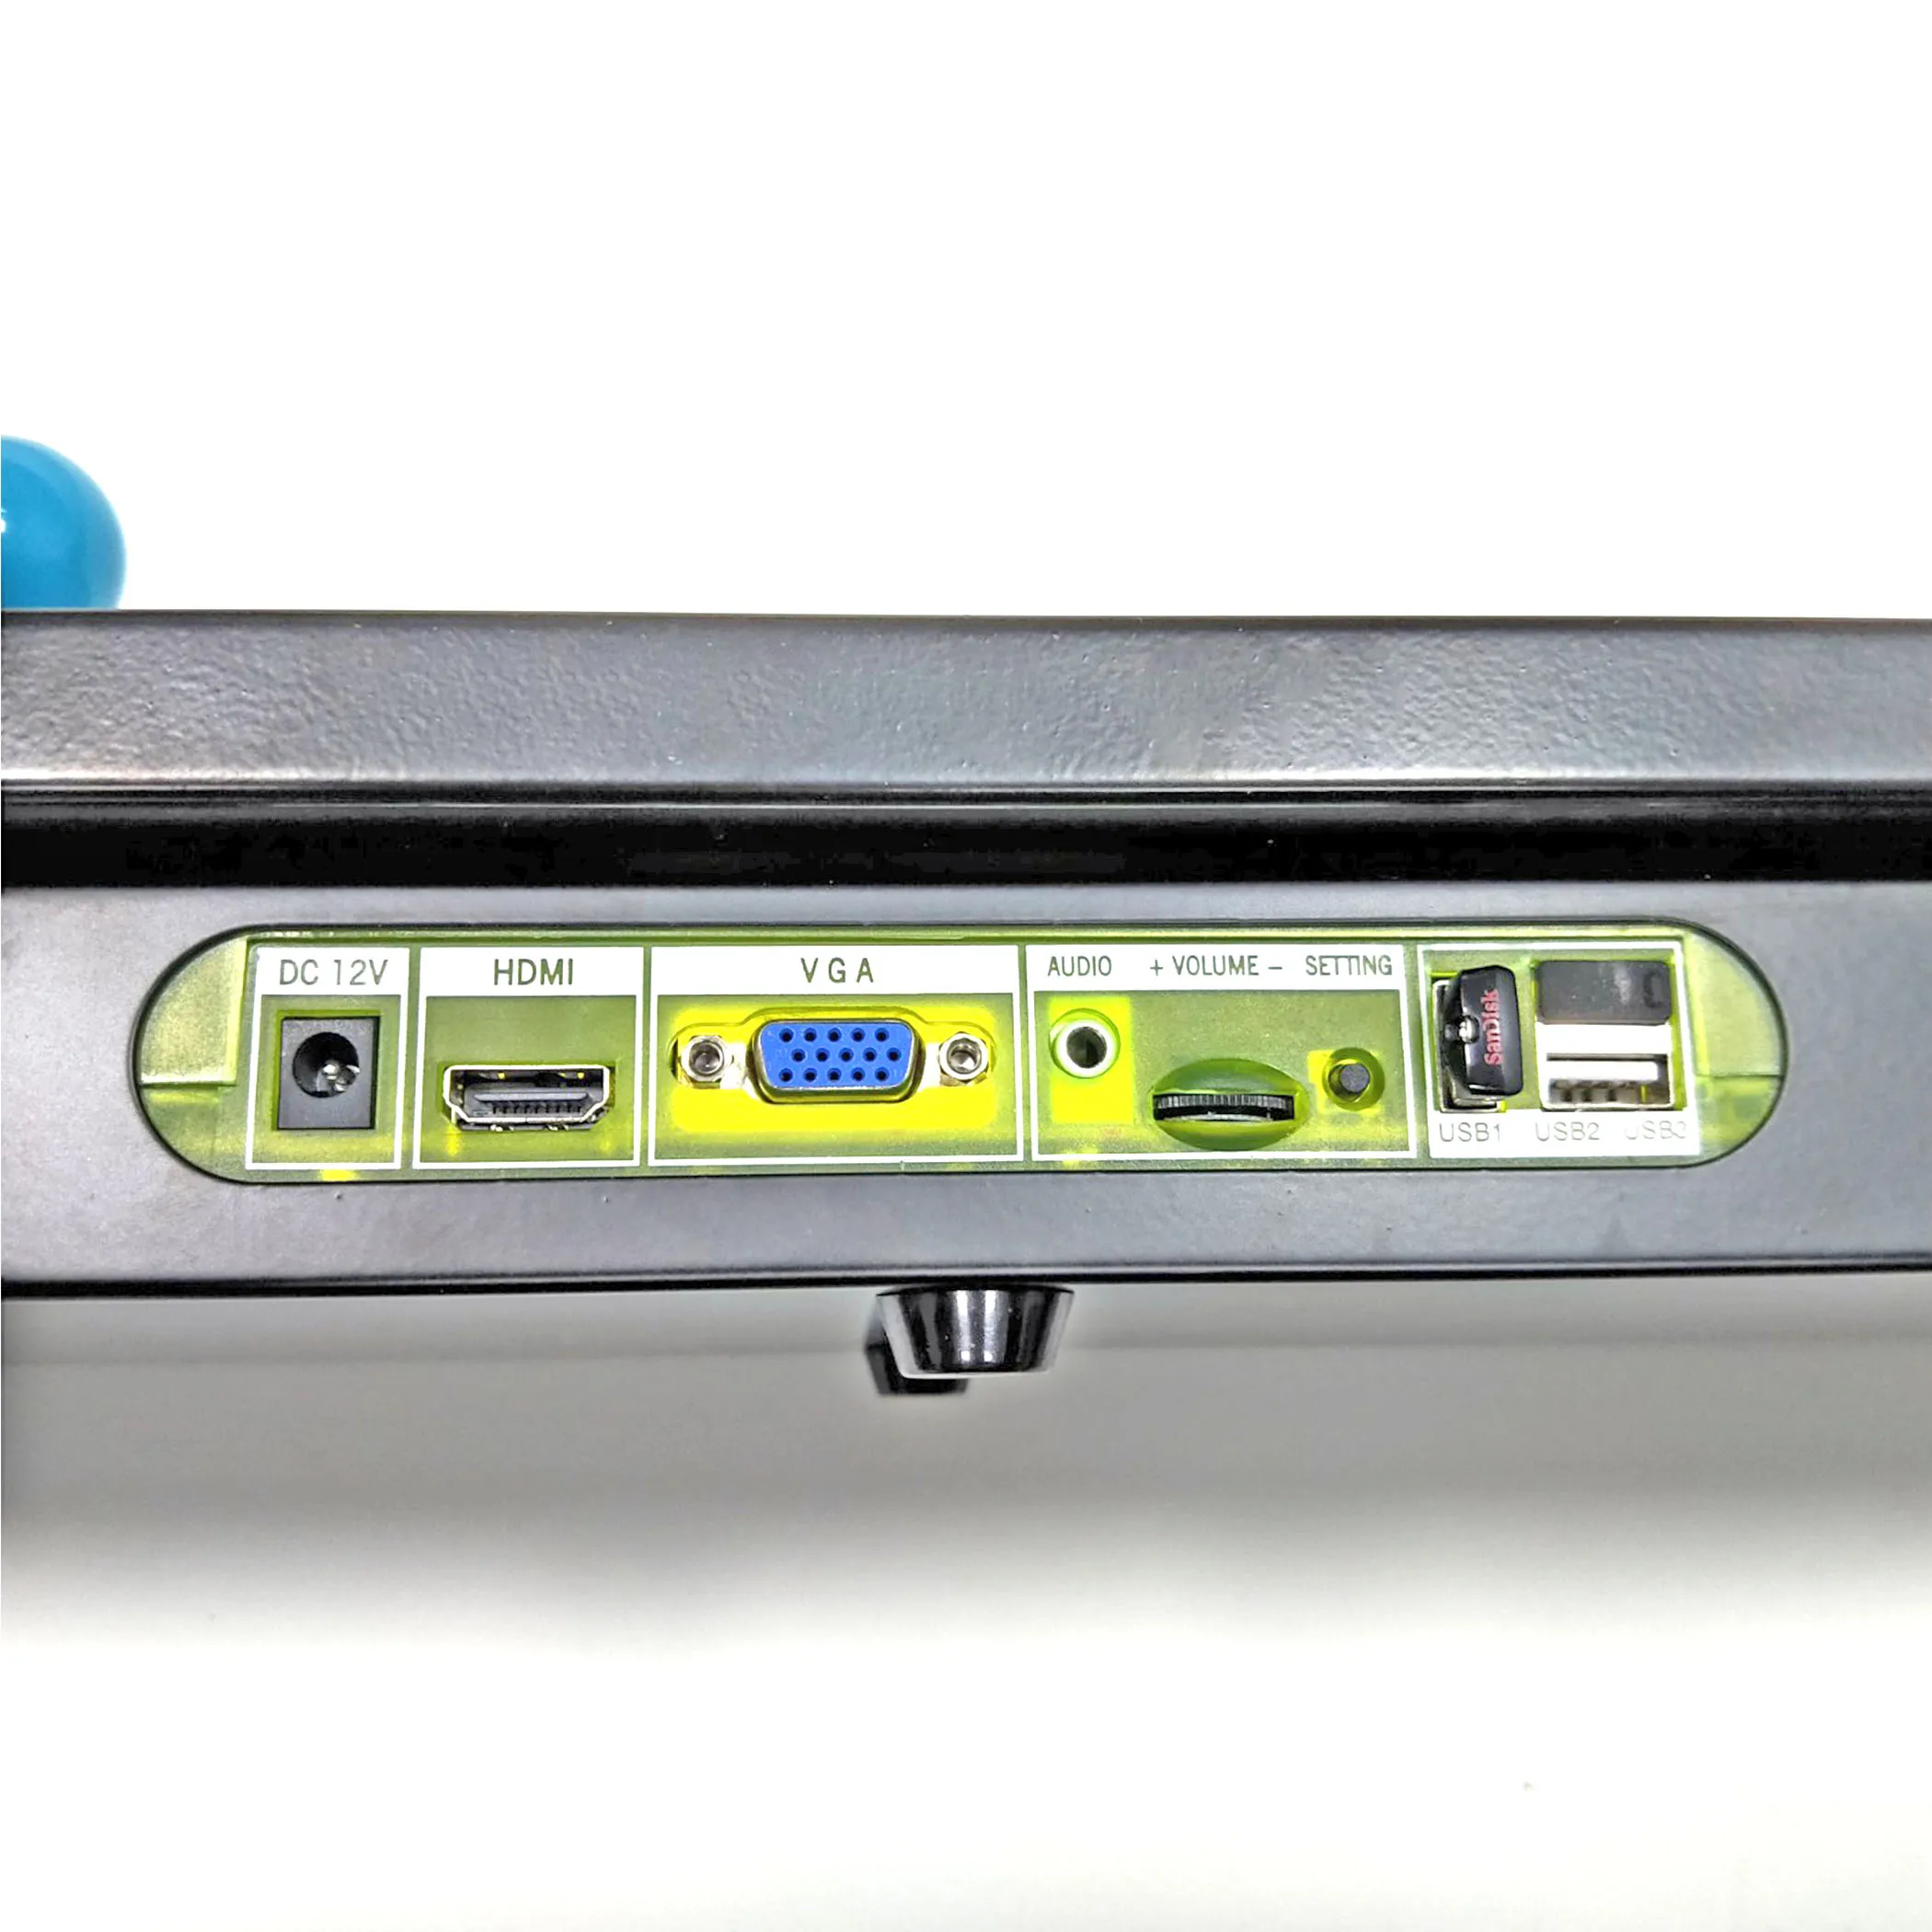 2 игрока Pandora box 6 1300 в 1 аркадная консоль джойстик Кнопка HDMI VGA выход ТВ контроллер машина Поддержка добавить игры